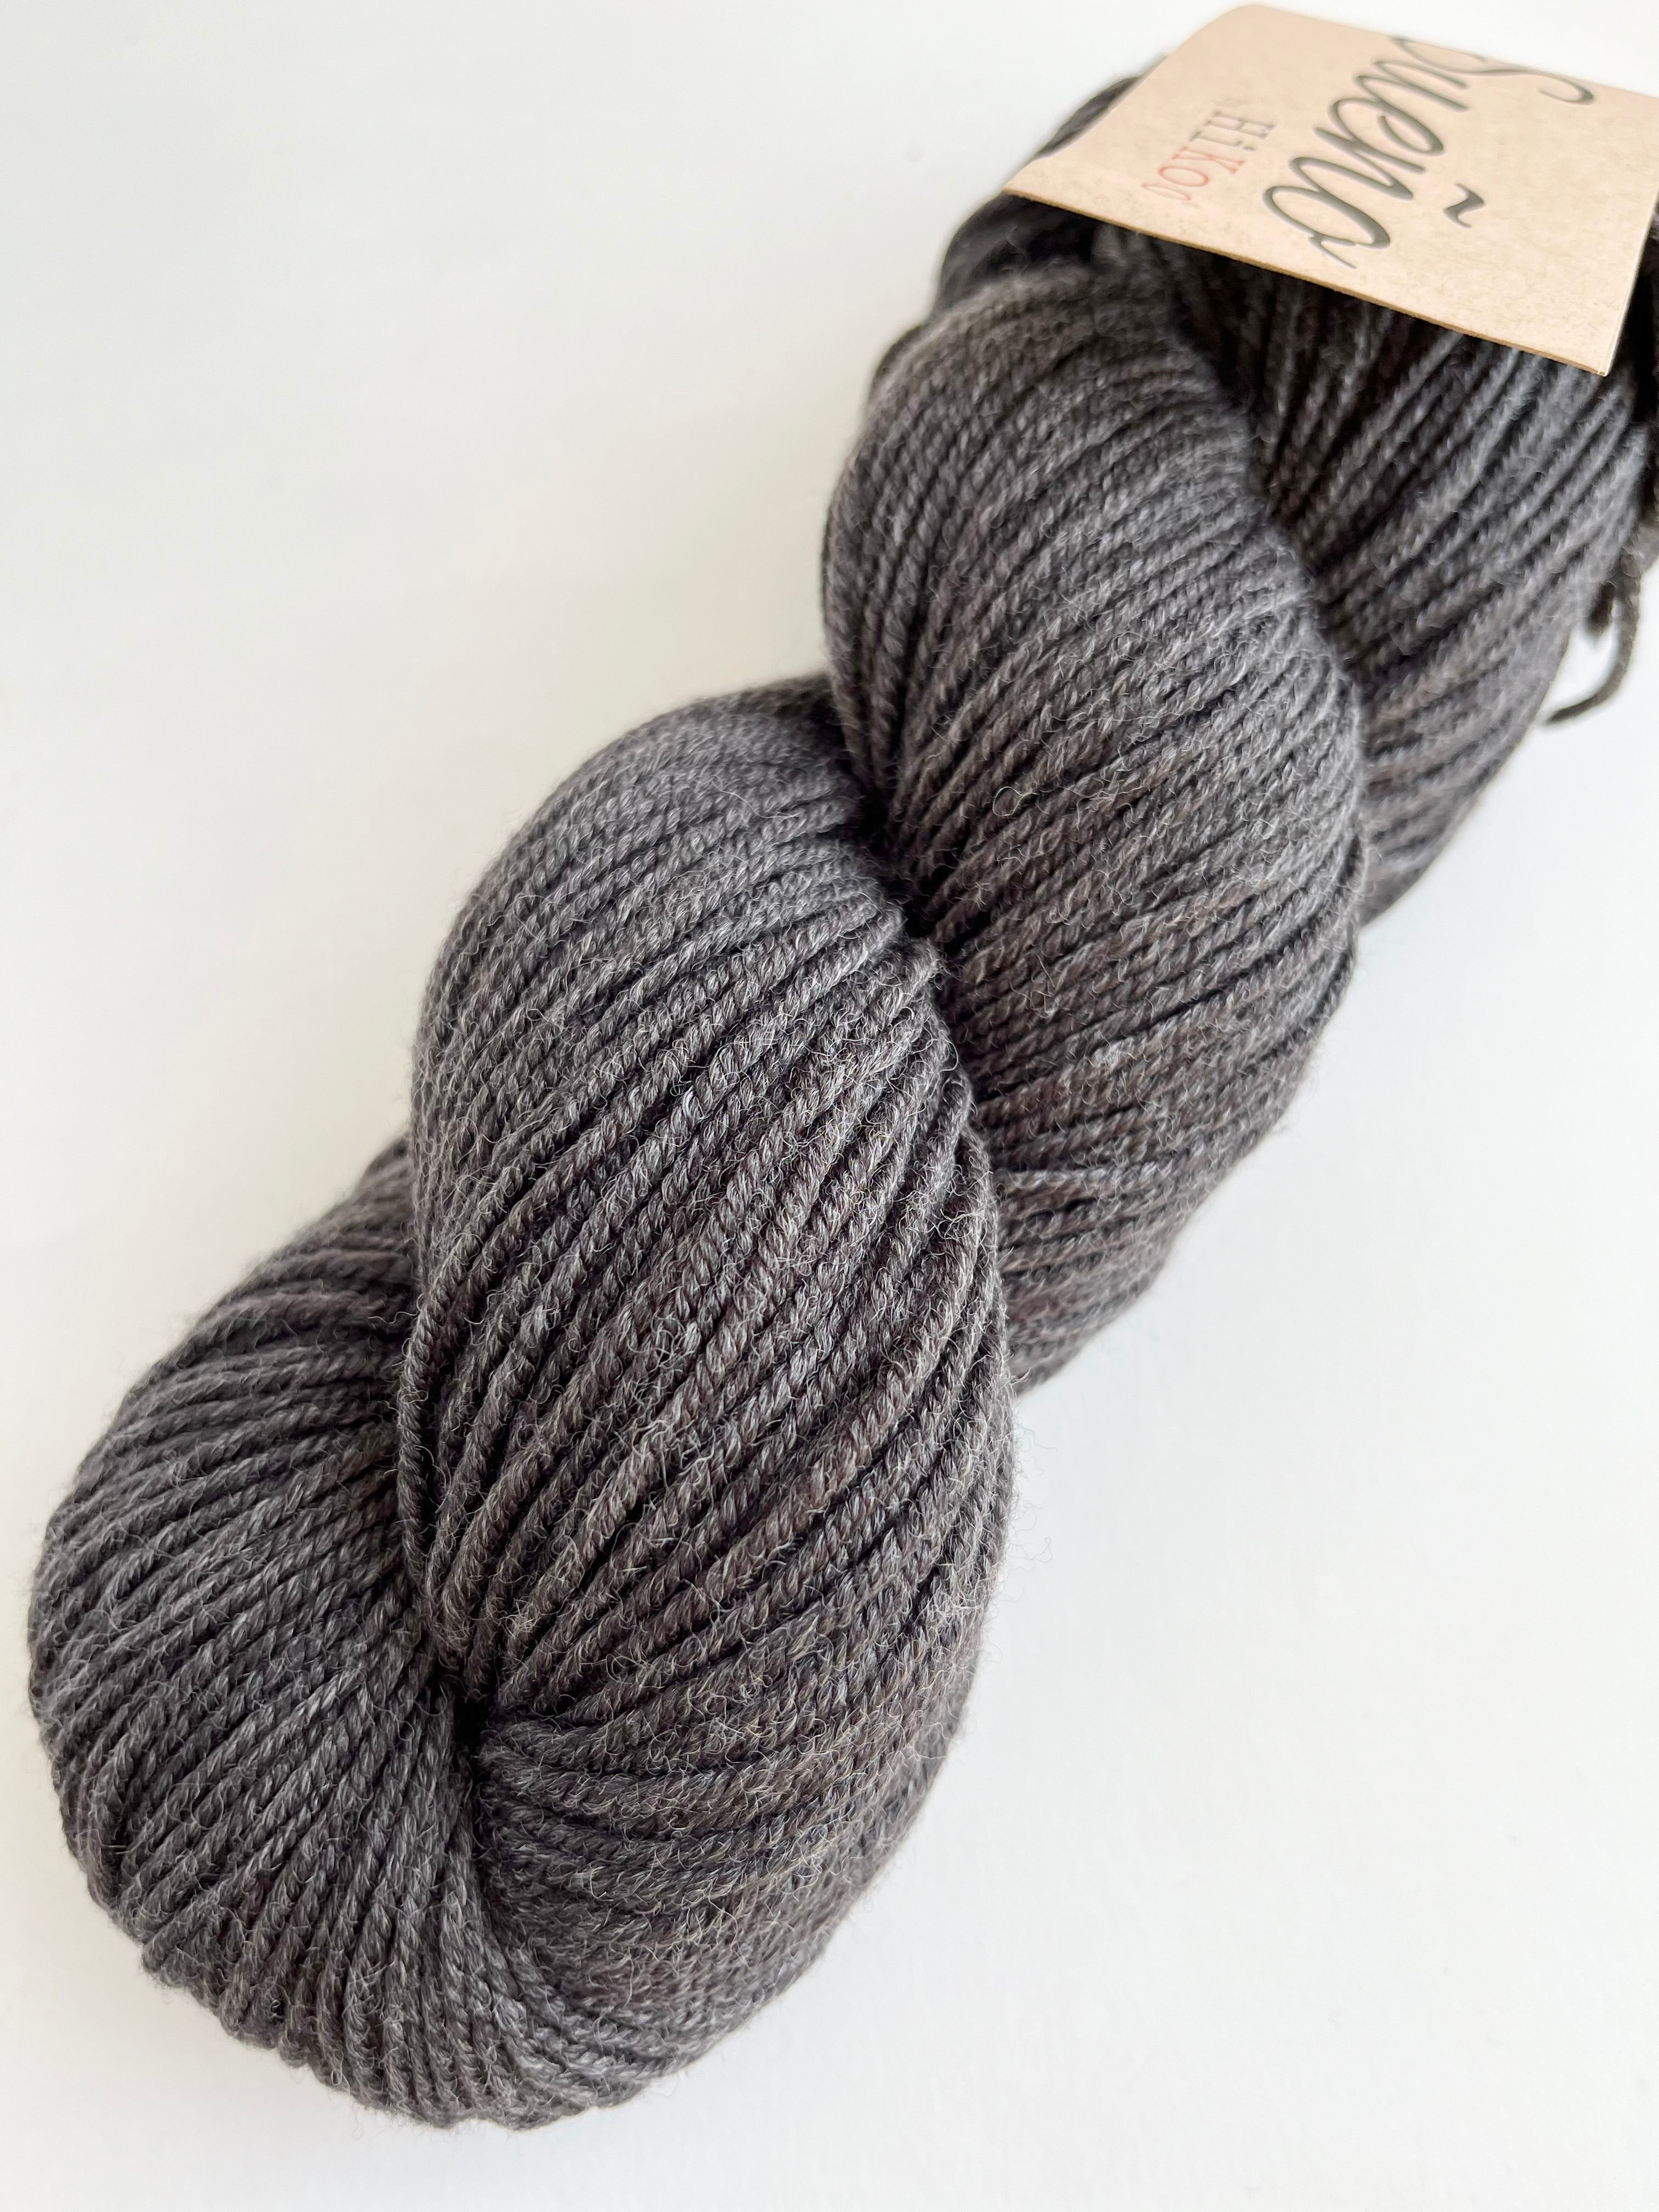 Grey Heather - Sueño yarn from HiKoo